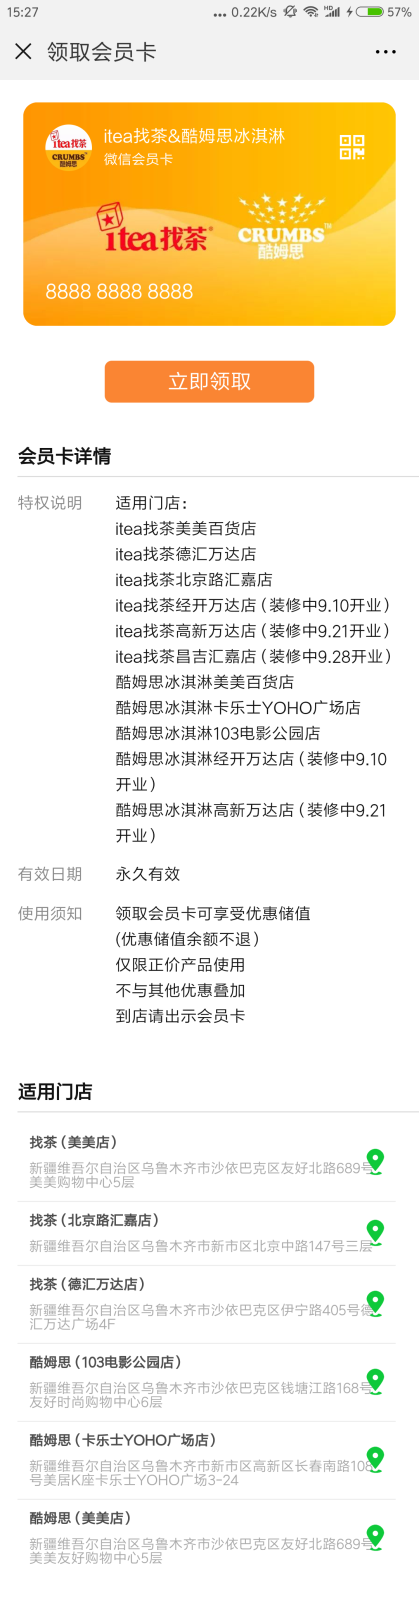 Screenshot_2018-08-28-15-27-56-228_com.tencent.mm.png